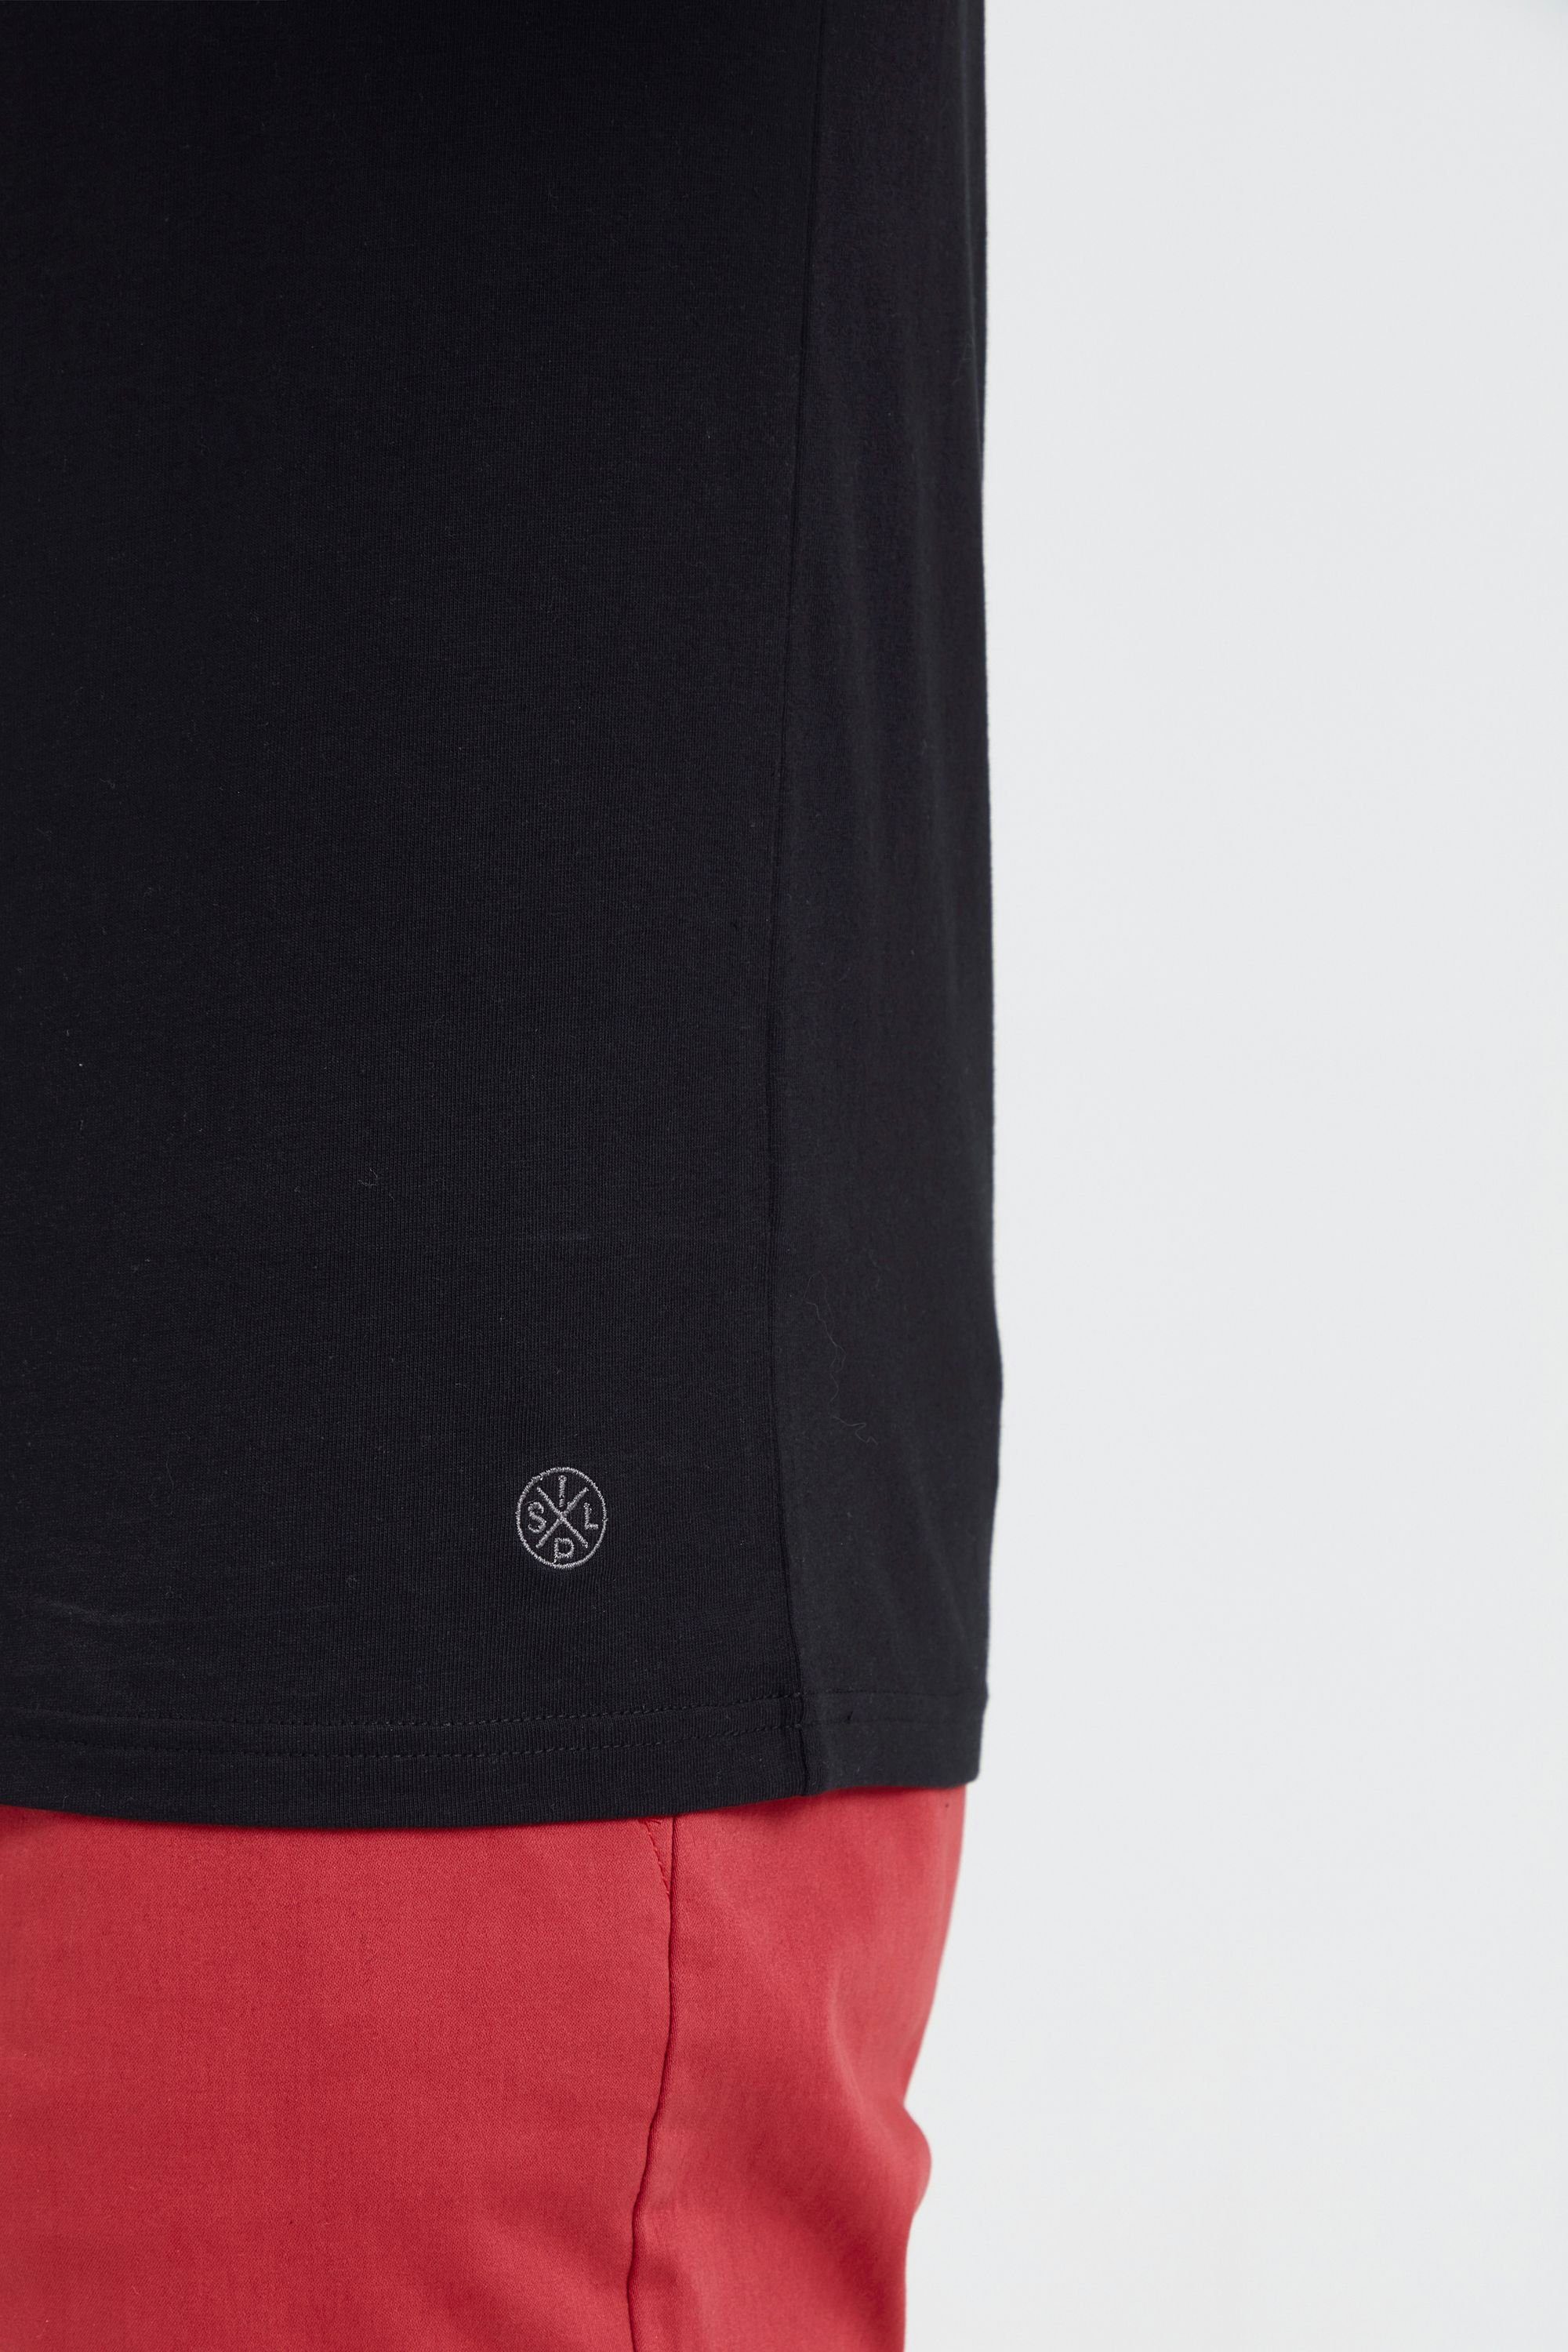 Streifenoptik !Solid SDSascha (9000) Rundhalsshirt T-Shirt Black Tricolor in